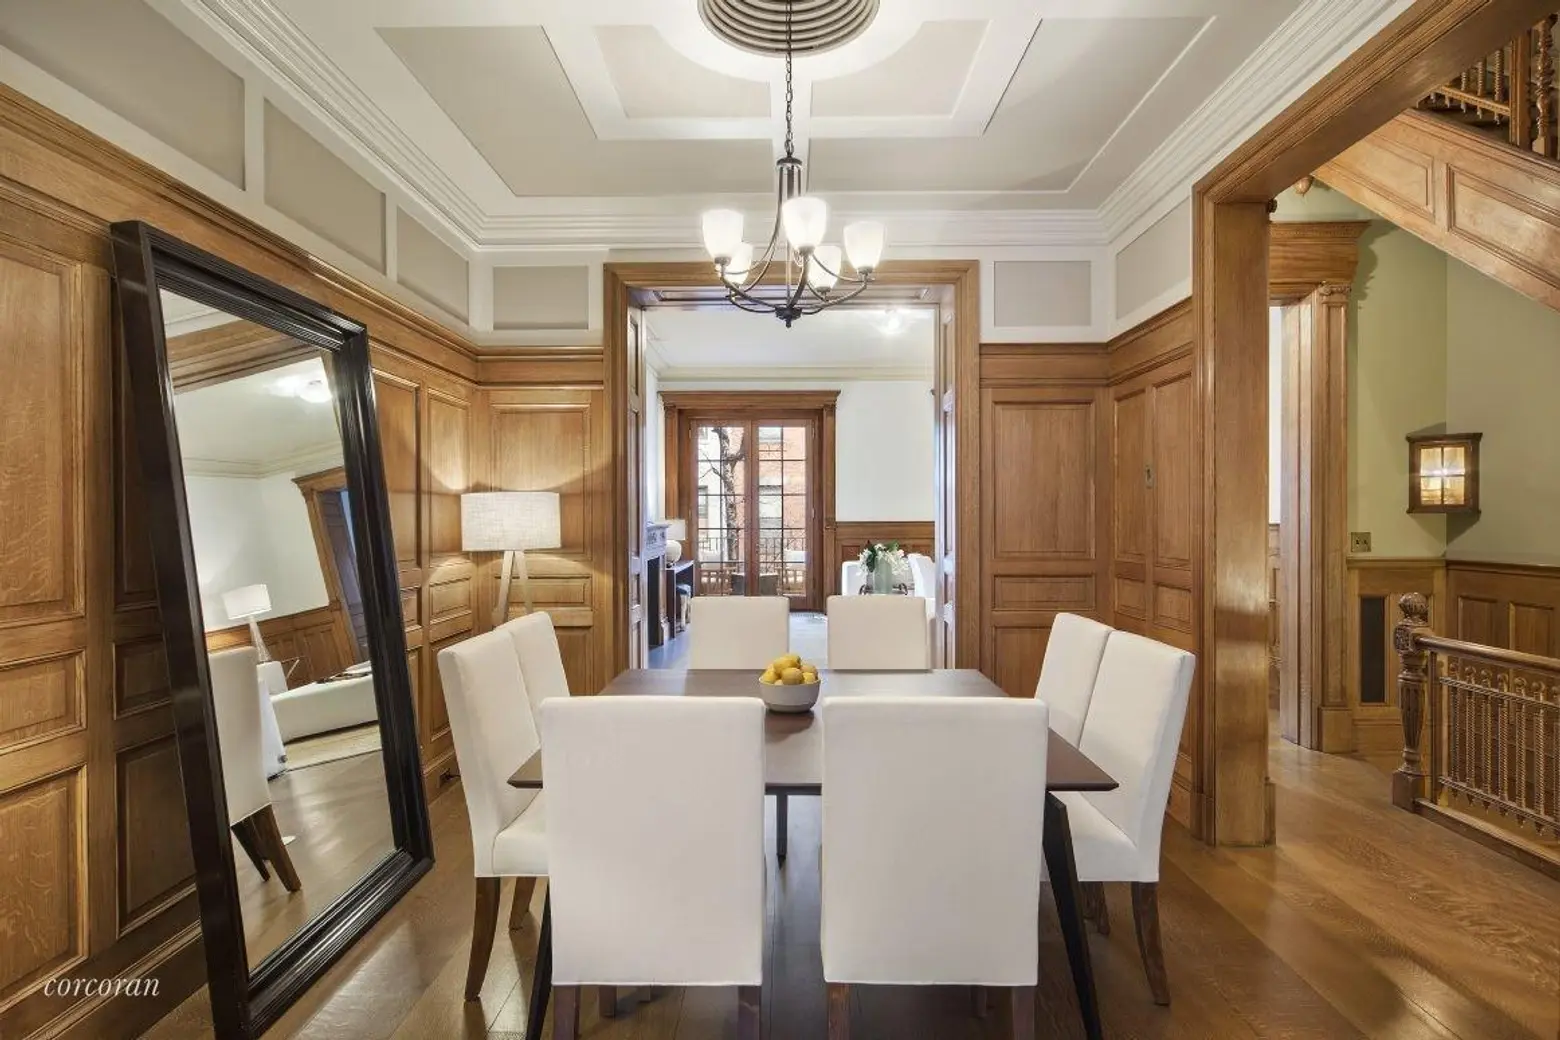 Ben Stiller's New York City Apartment Finds a Buyer - WSJ